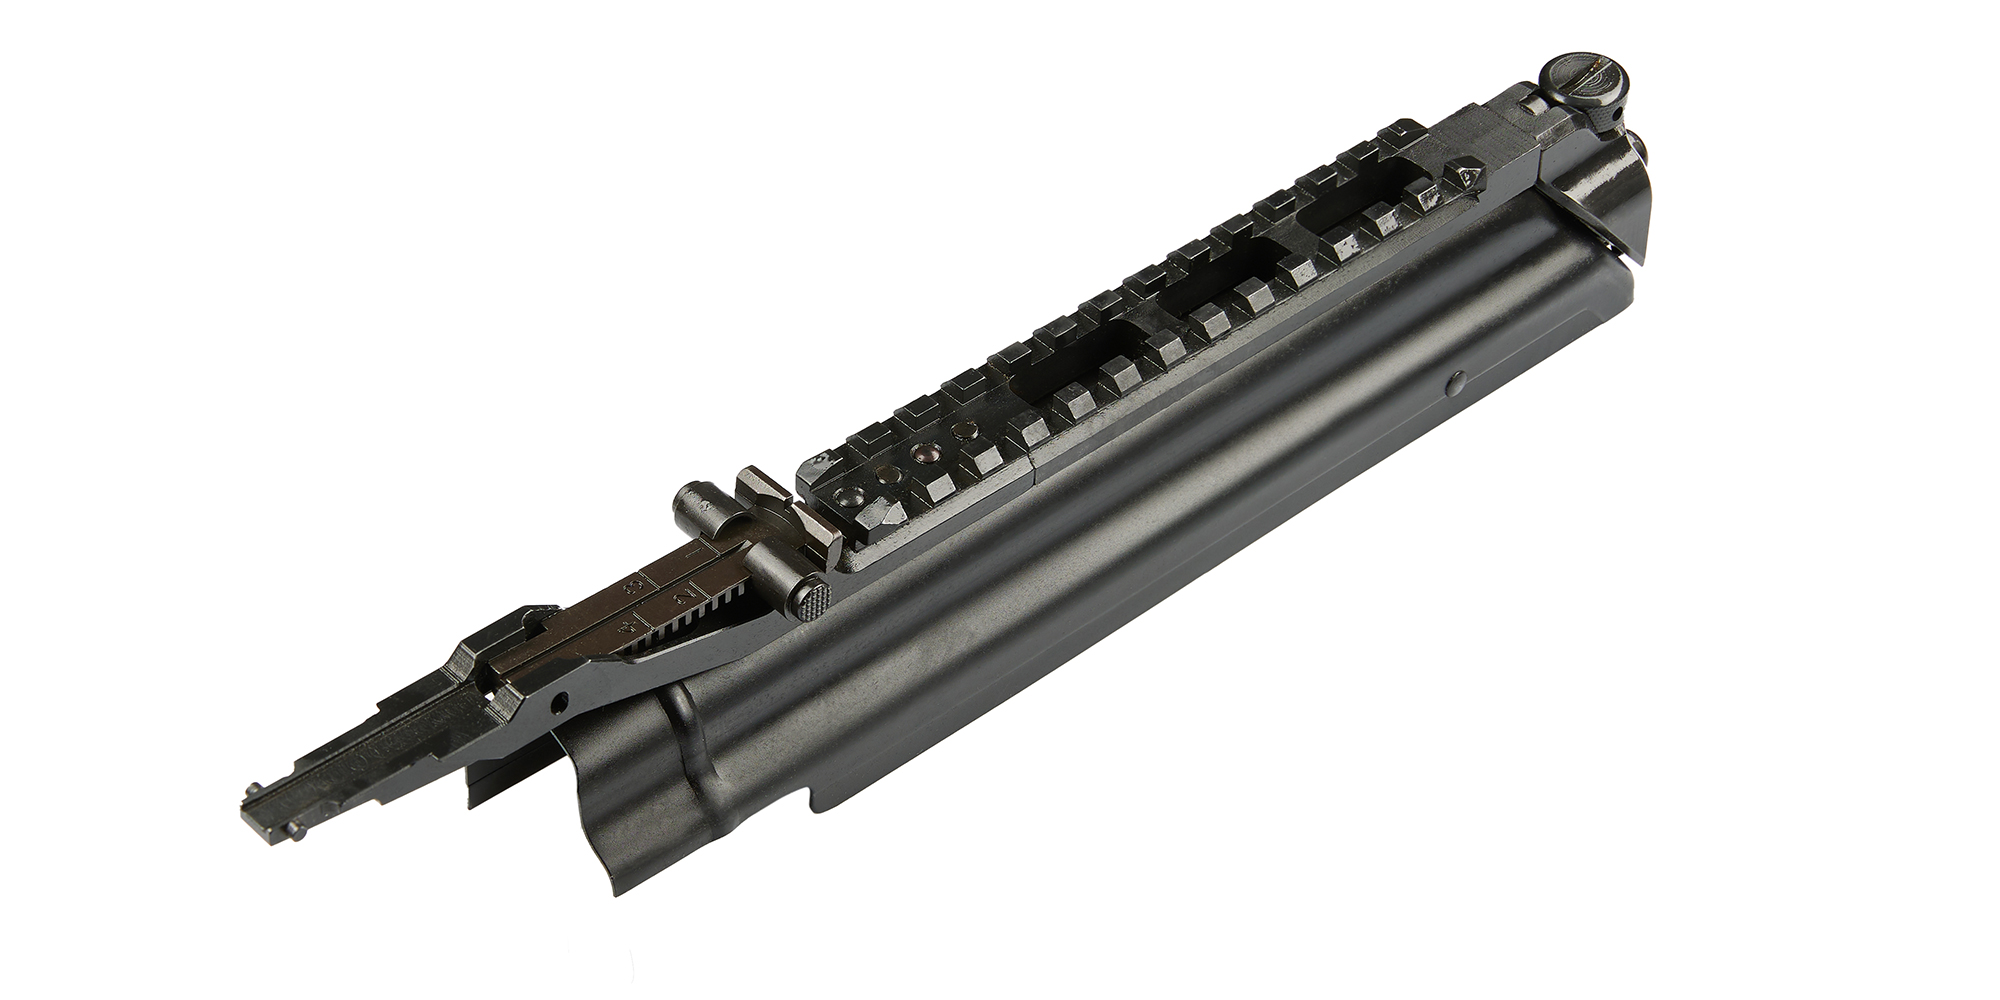 Capac cutie mecanisme cu șină pentru optică grea, pentru arme de foc Nova Modul în calibrul 9×19 si .22LR